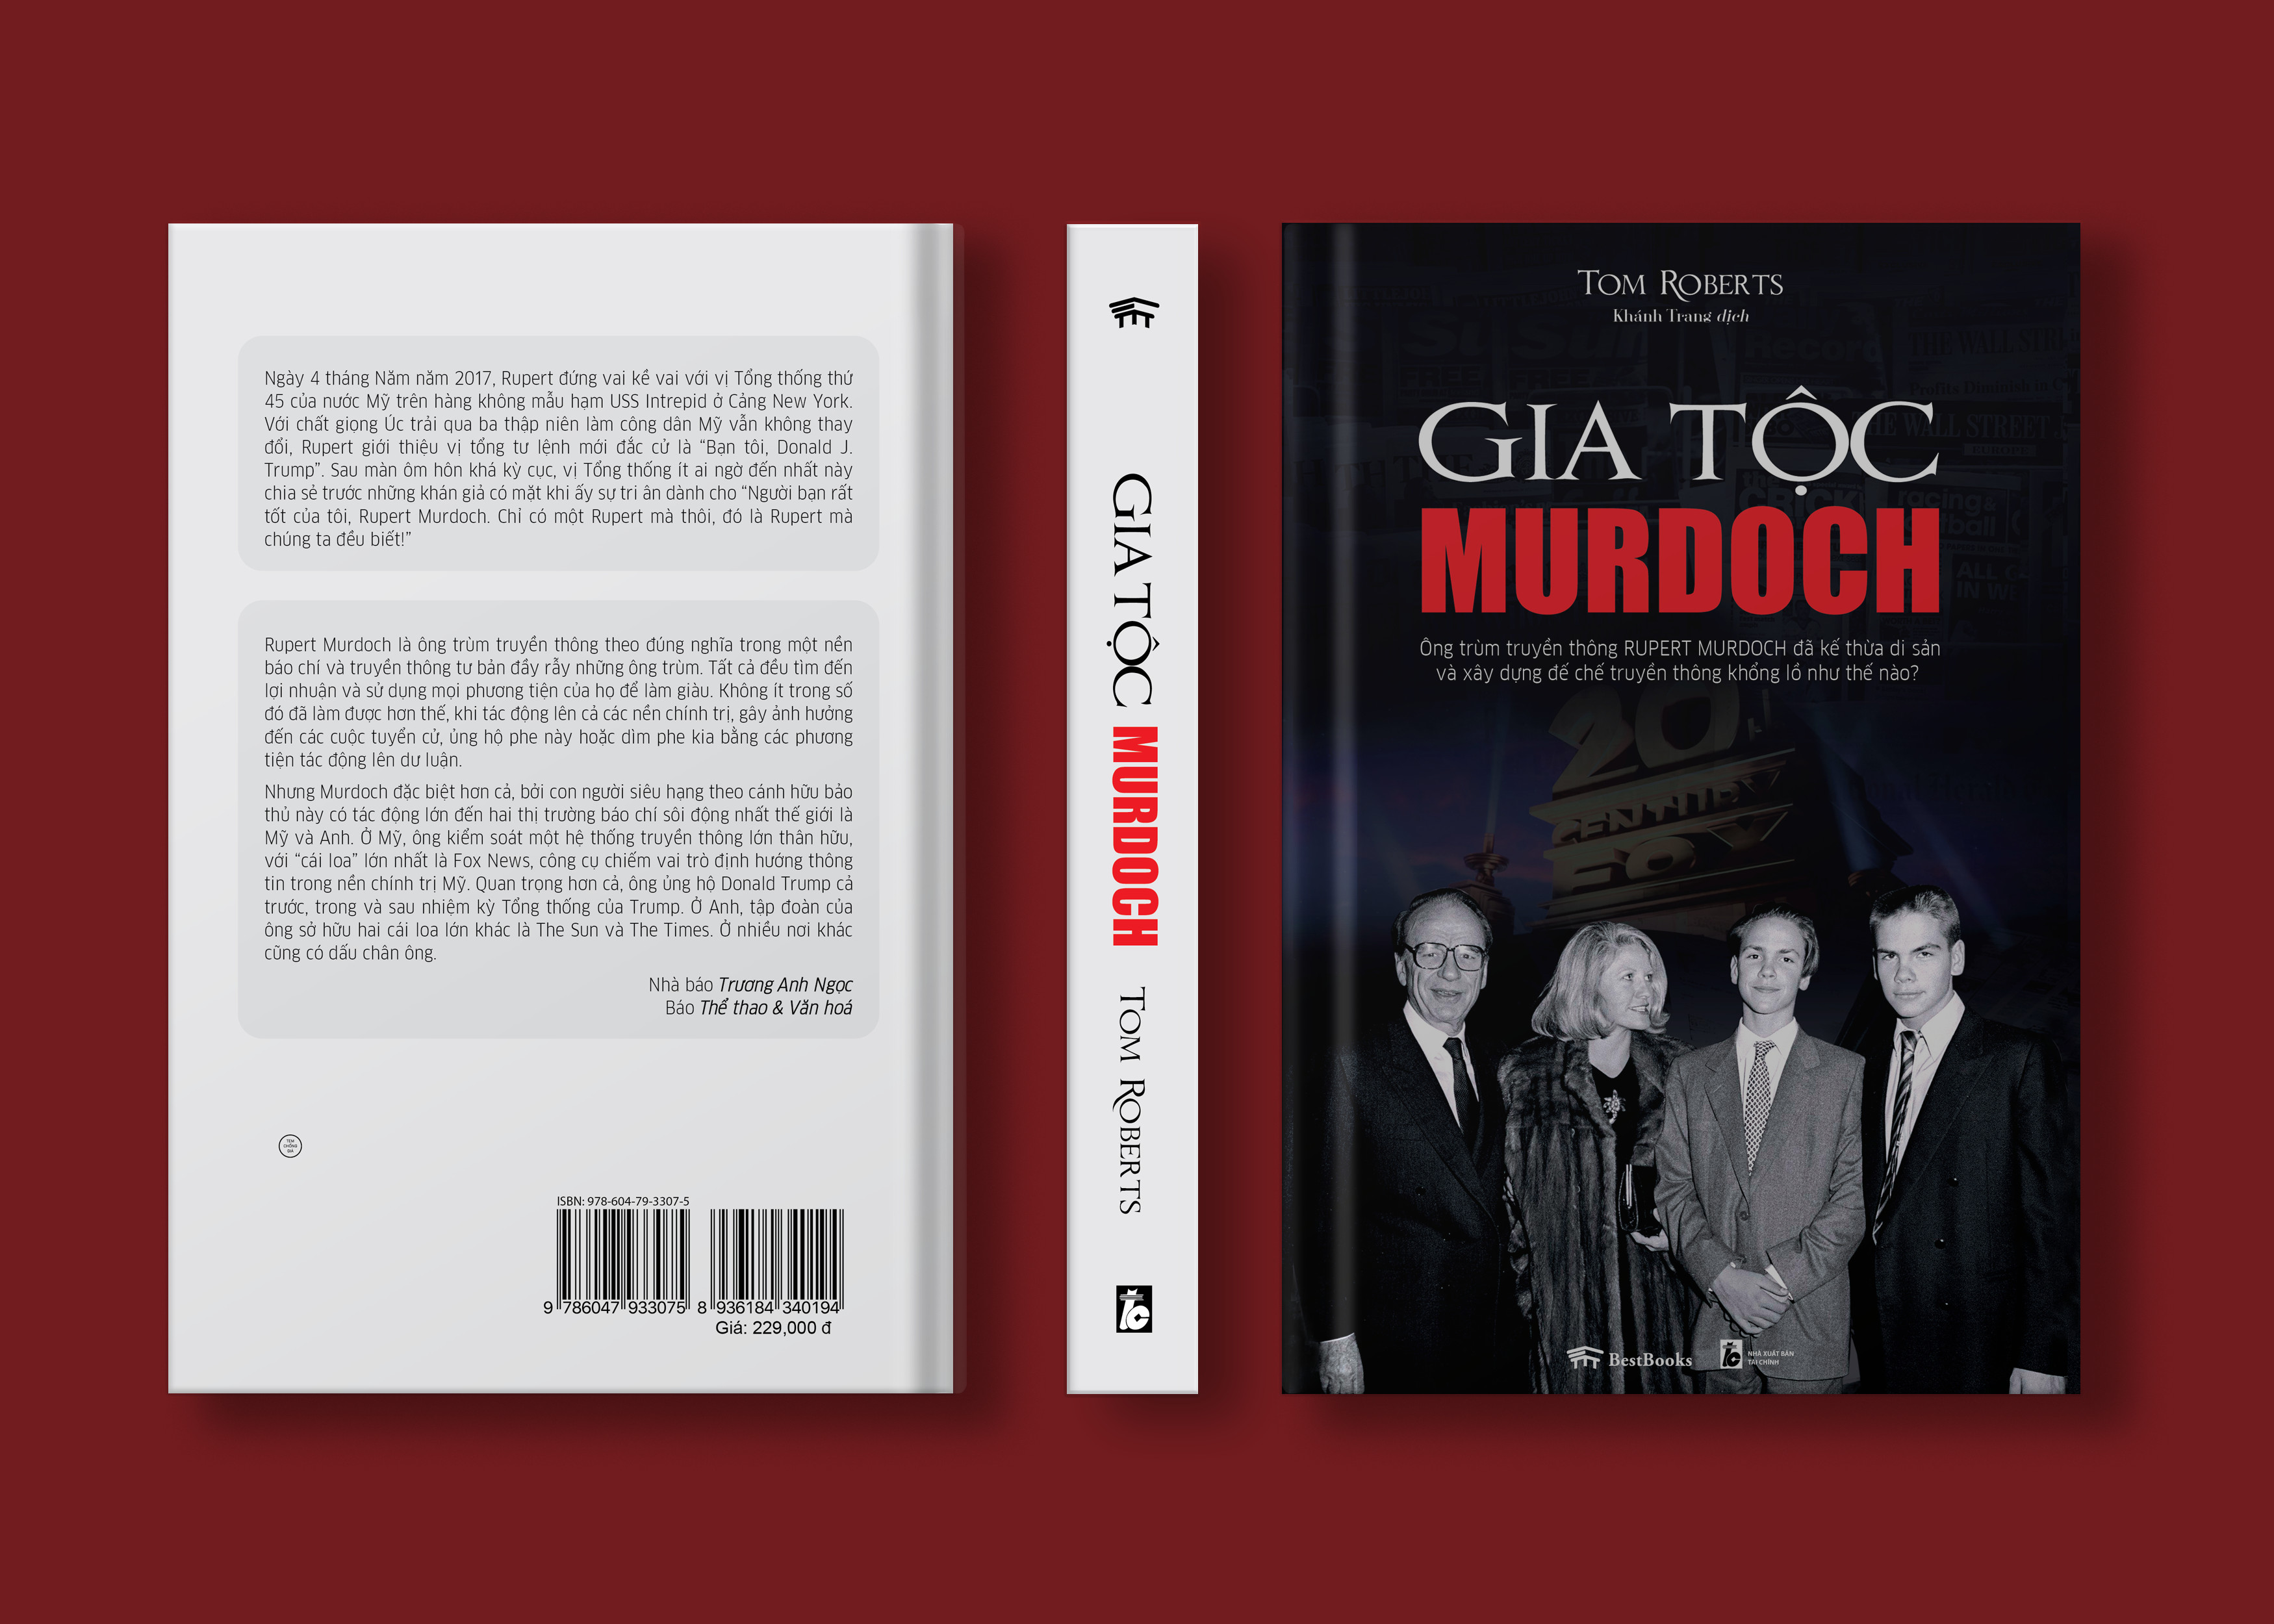 GIA TỘC MURDOCH - Ông trùm truyền thông Rupert Murdoch đã kế thừa di sản và xây dựng đế chế truyền thông khổng lồ như thế nào?